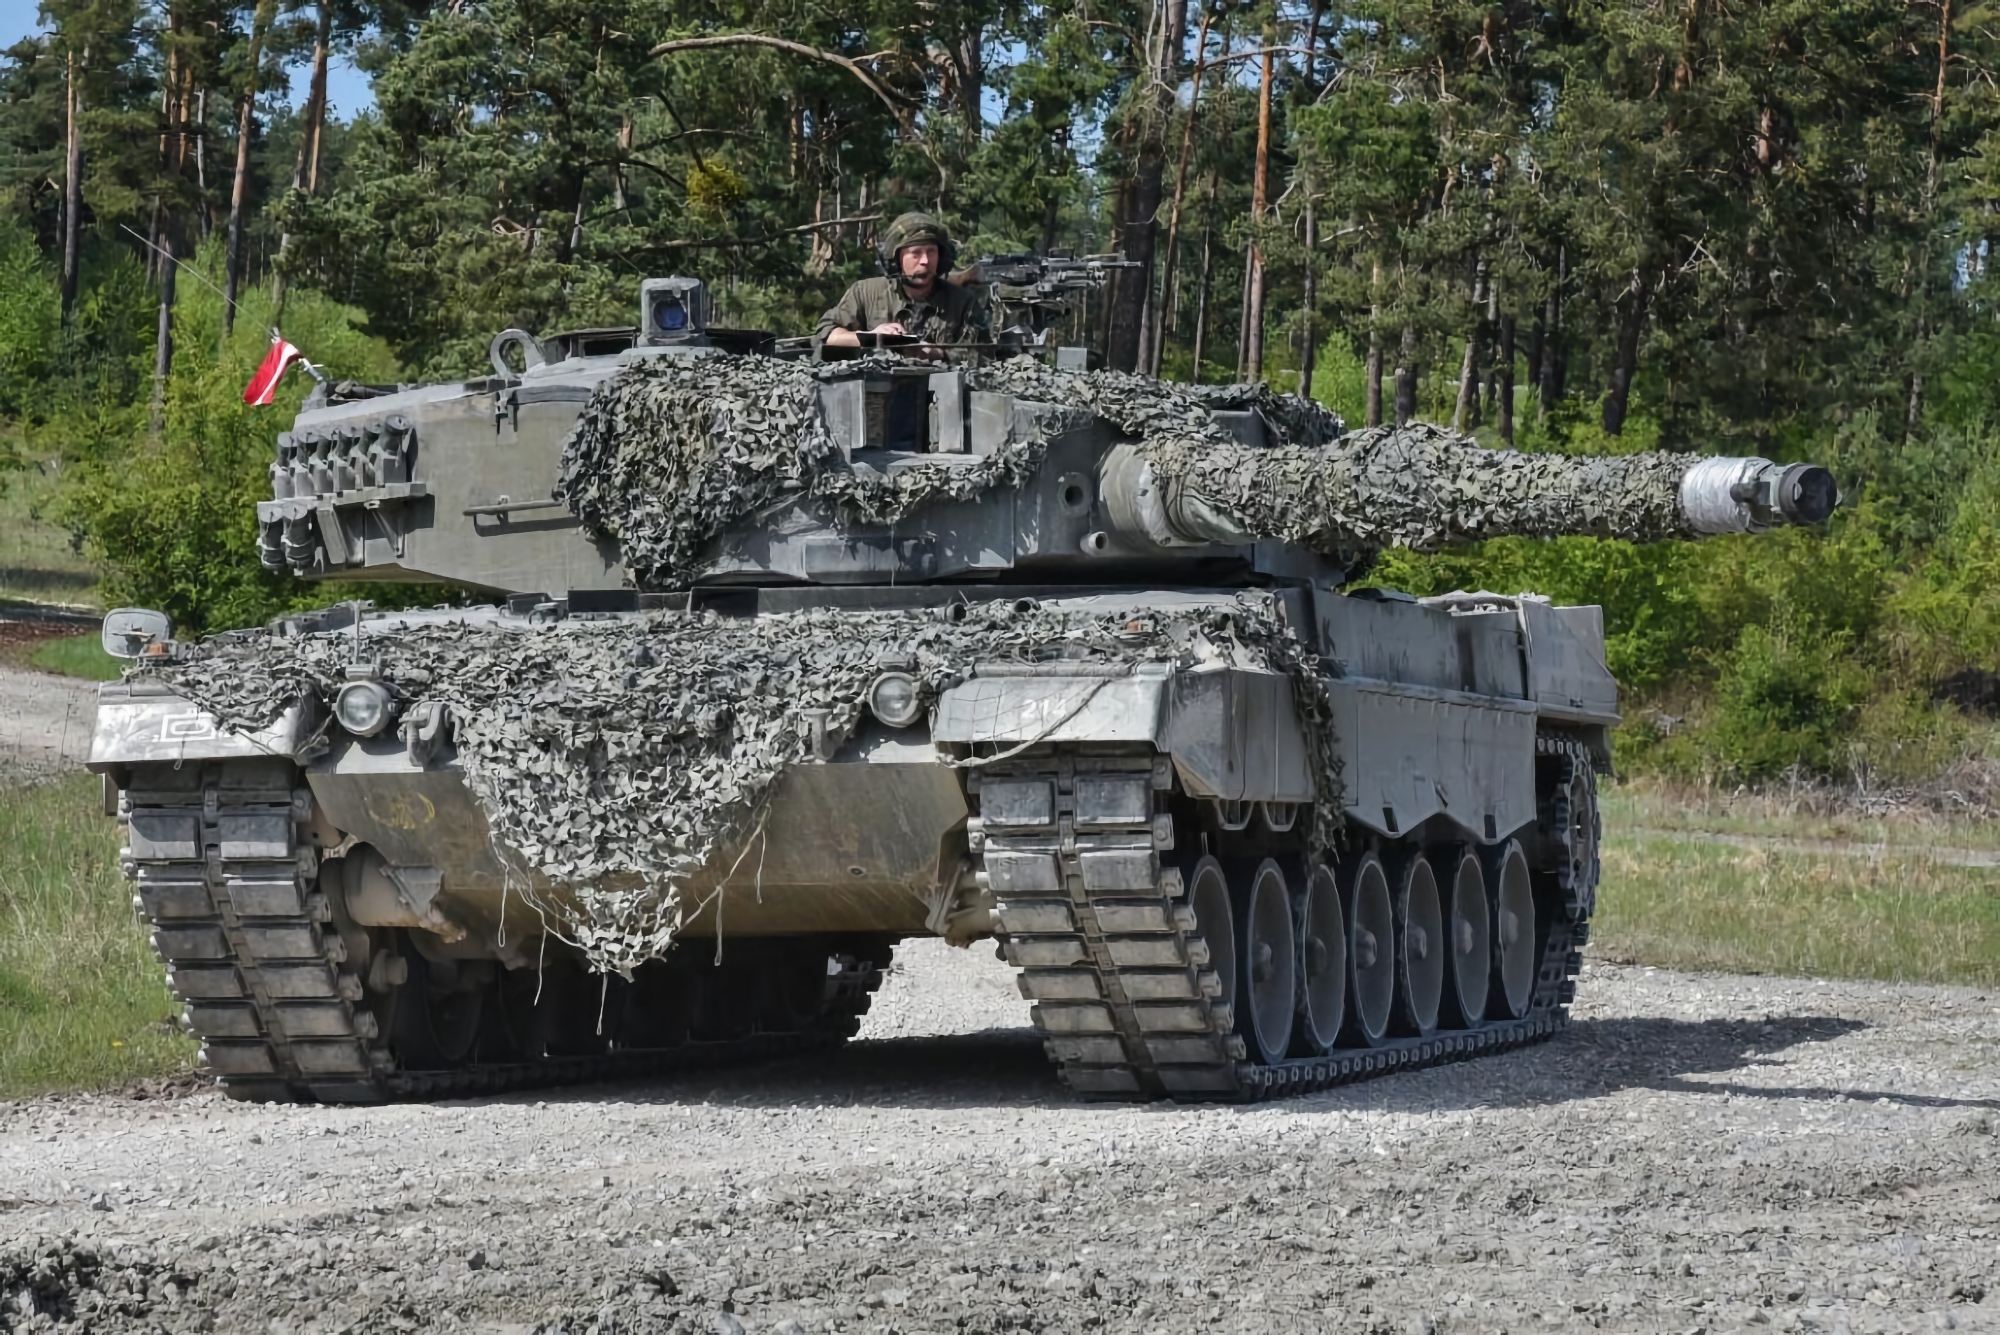 Ufficiale: La Spagna trasferirà 6 carri armati Leopard 2 all'Ucraina